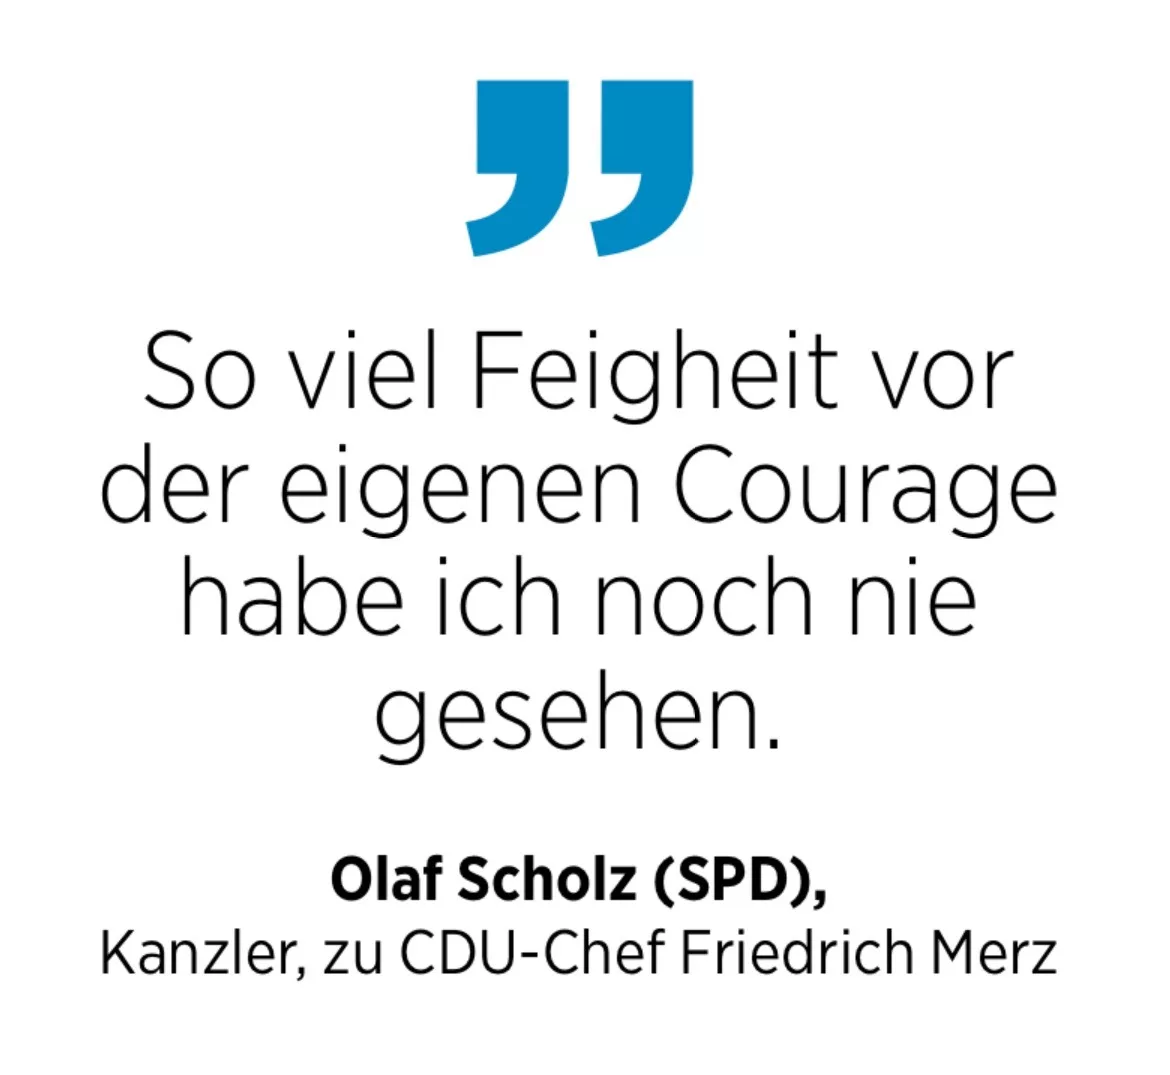 Olaf Scholz (SPD),
Kanzler, zu CDU-Chef Friedrich Merz: So viel Feigheit vor der eigenen Courage habe ich noch nie gesehen.